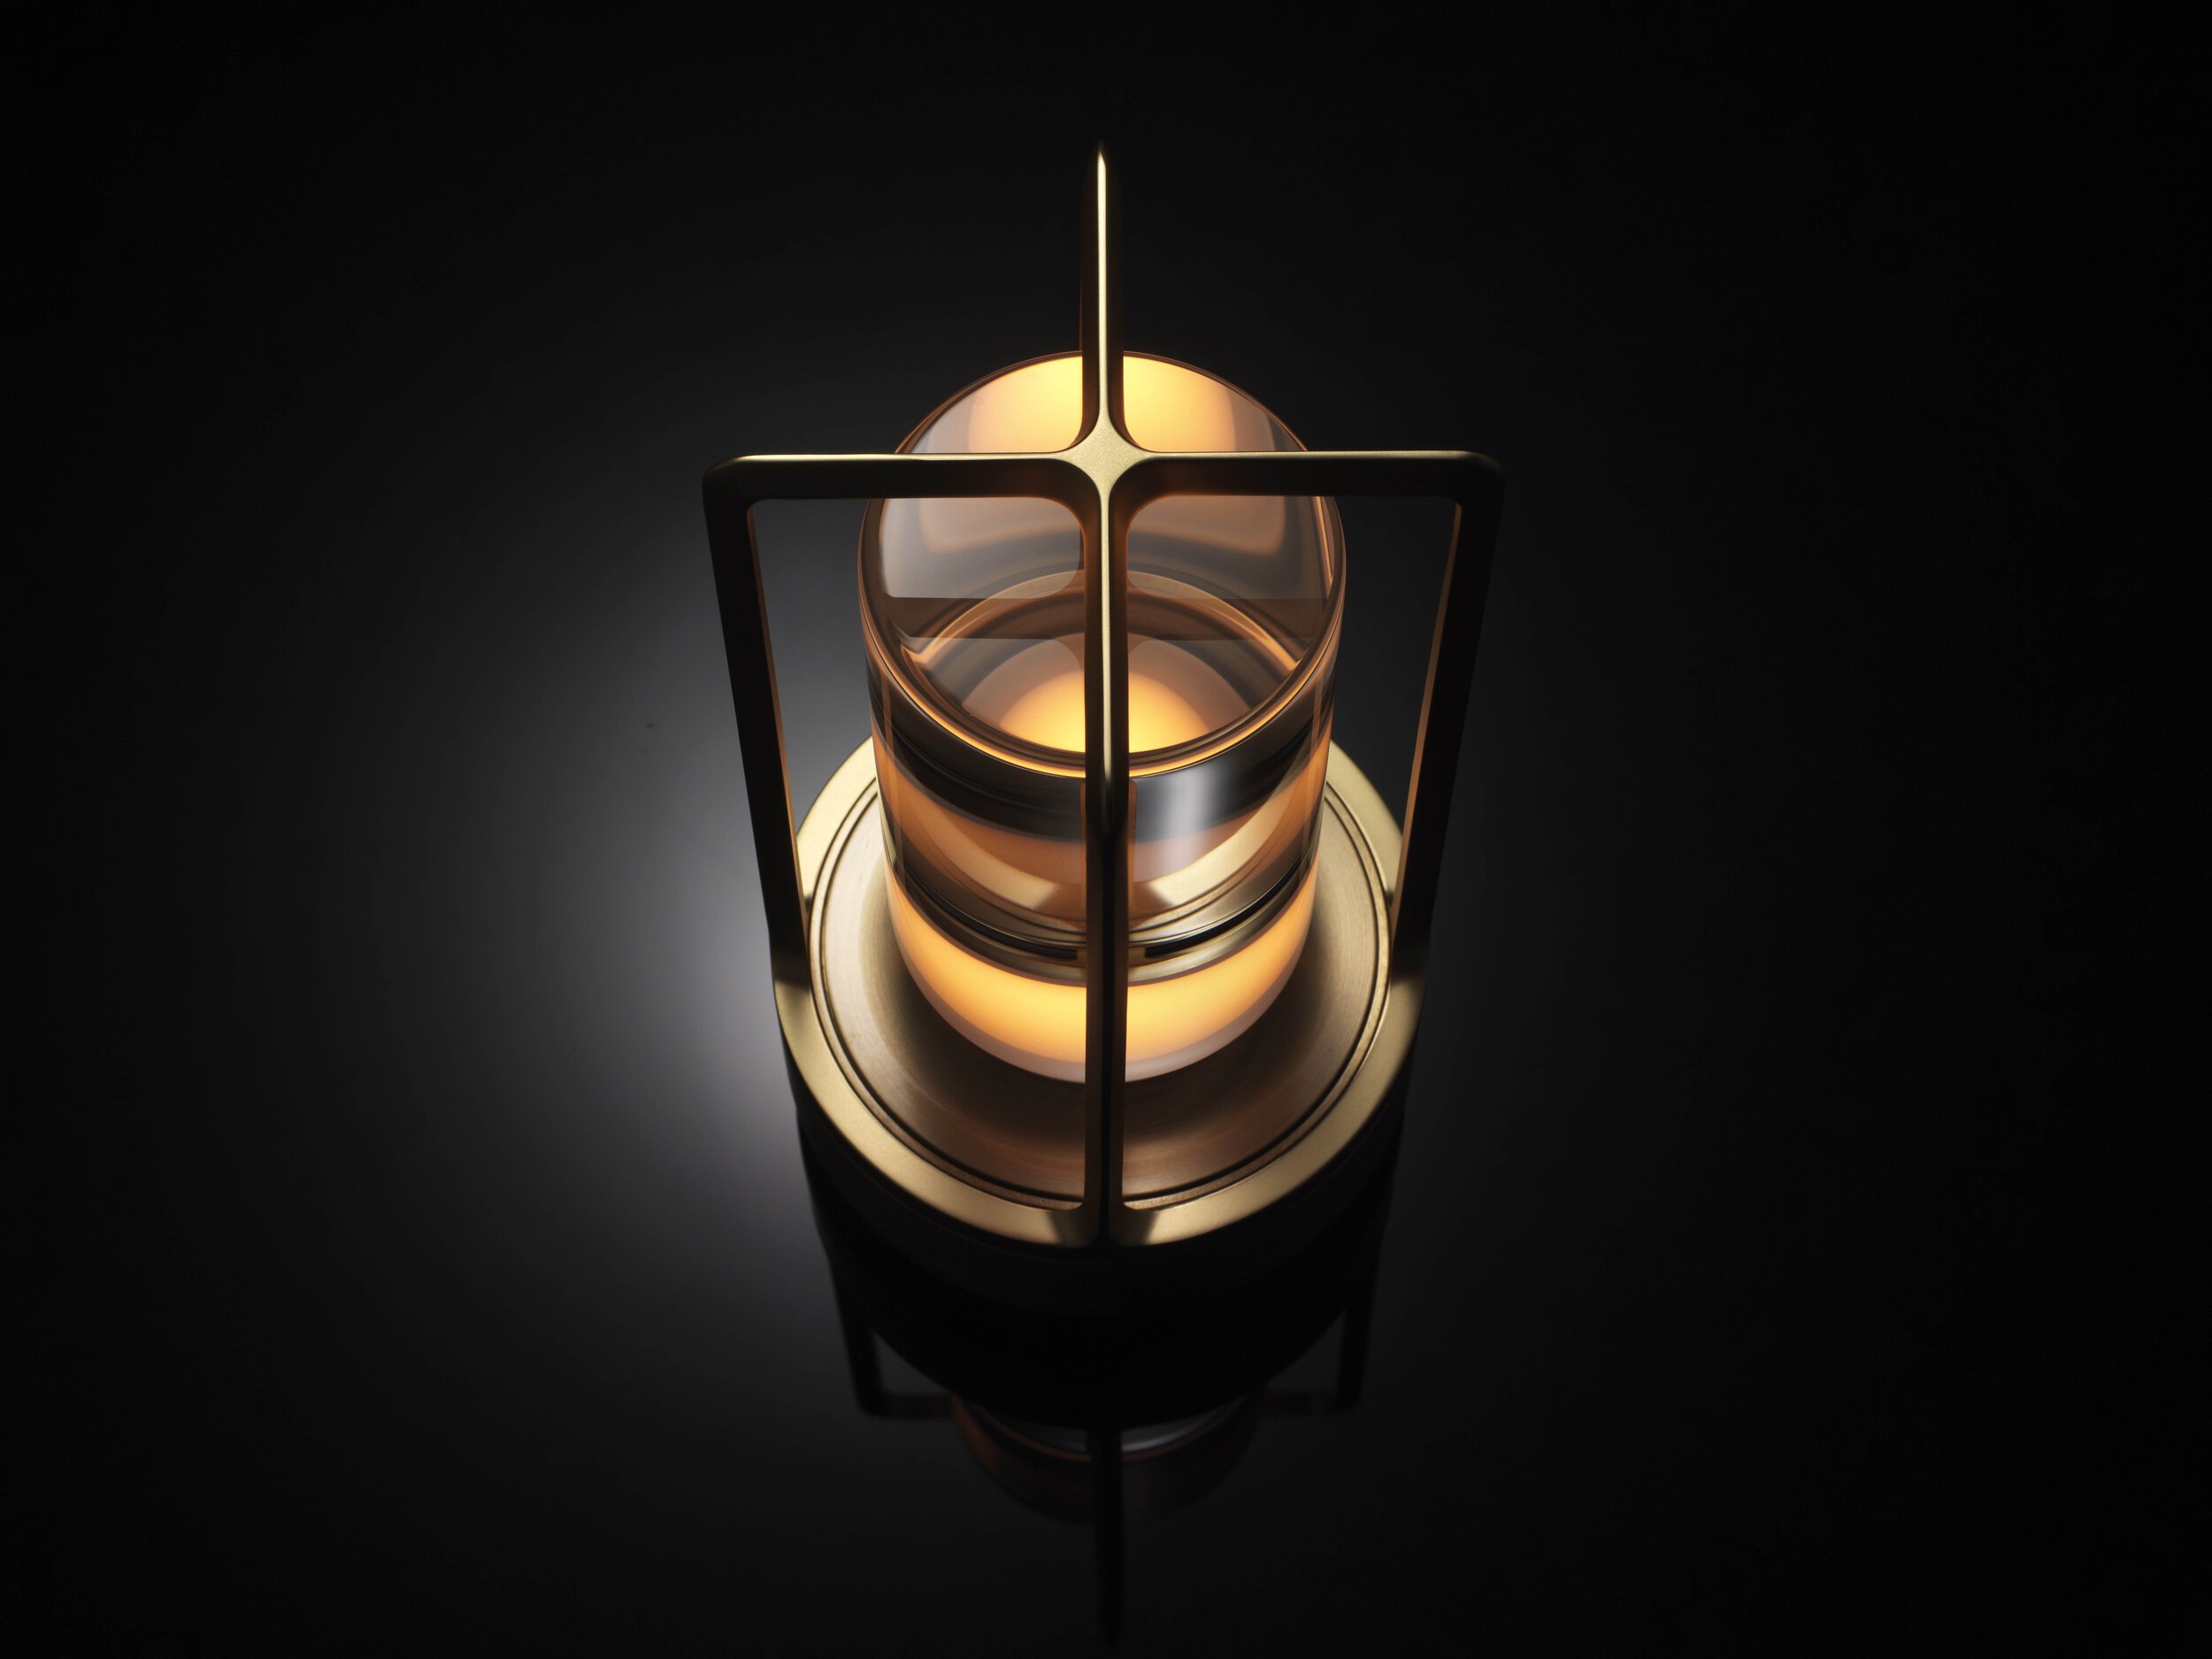  Nao Tamura 田村奈穂がデザインを手掛けた、アンビエンテックの照明器具「TURN+（ターンプラス）」。光の色と明るさは4段階に変化する。 